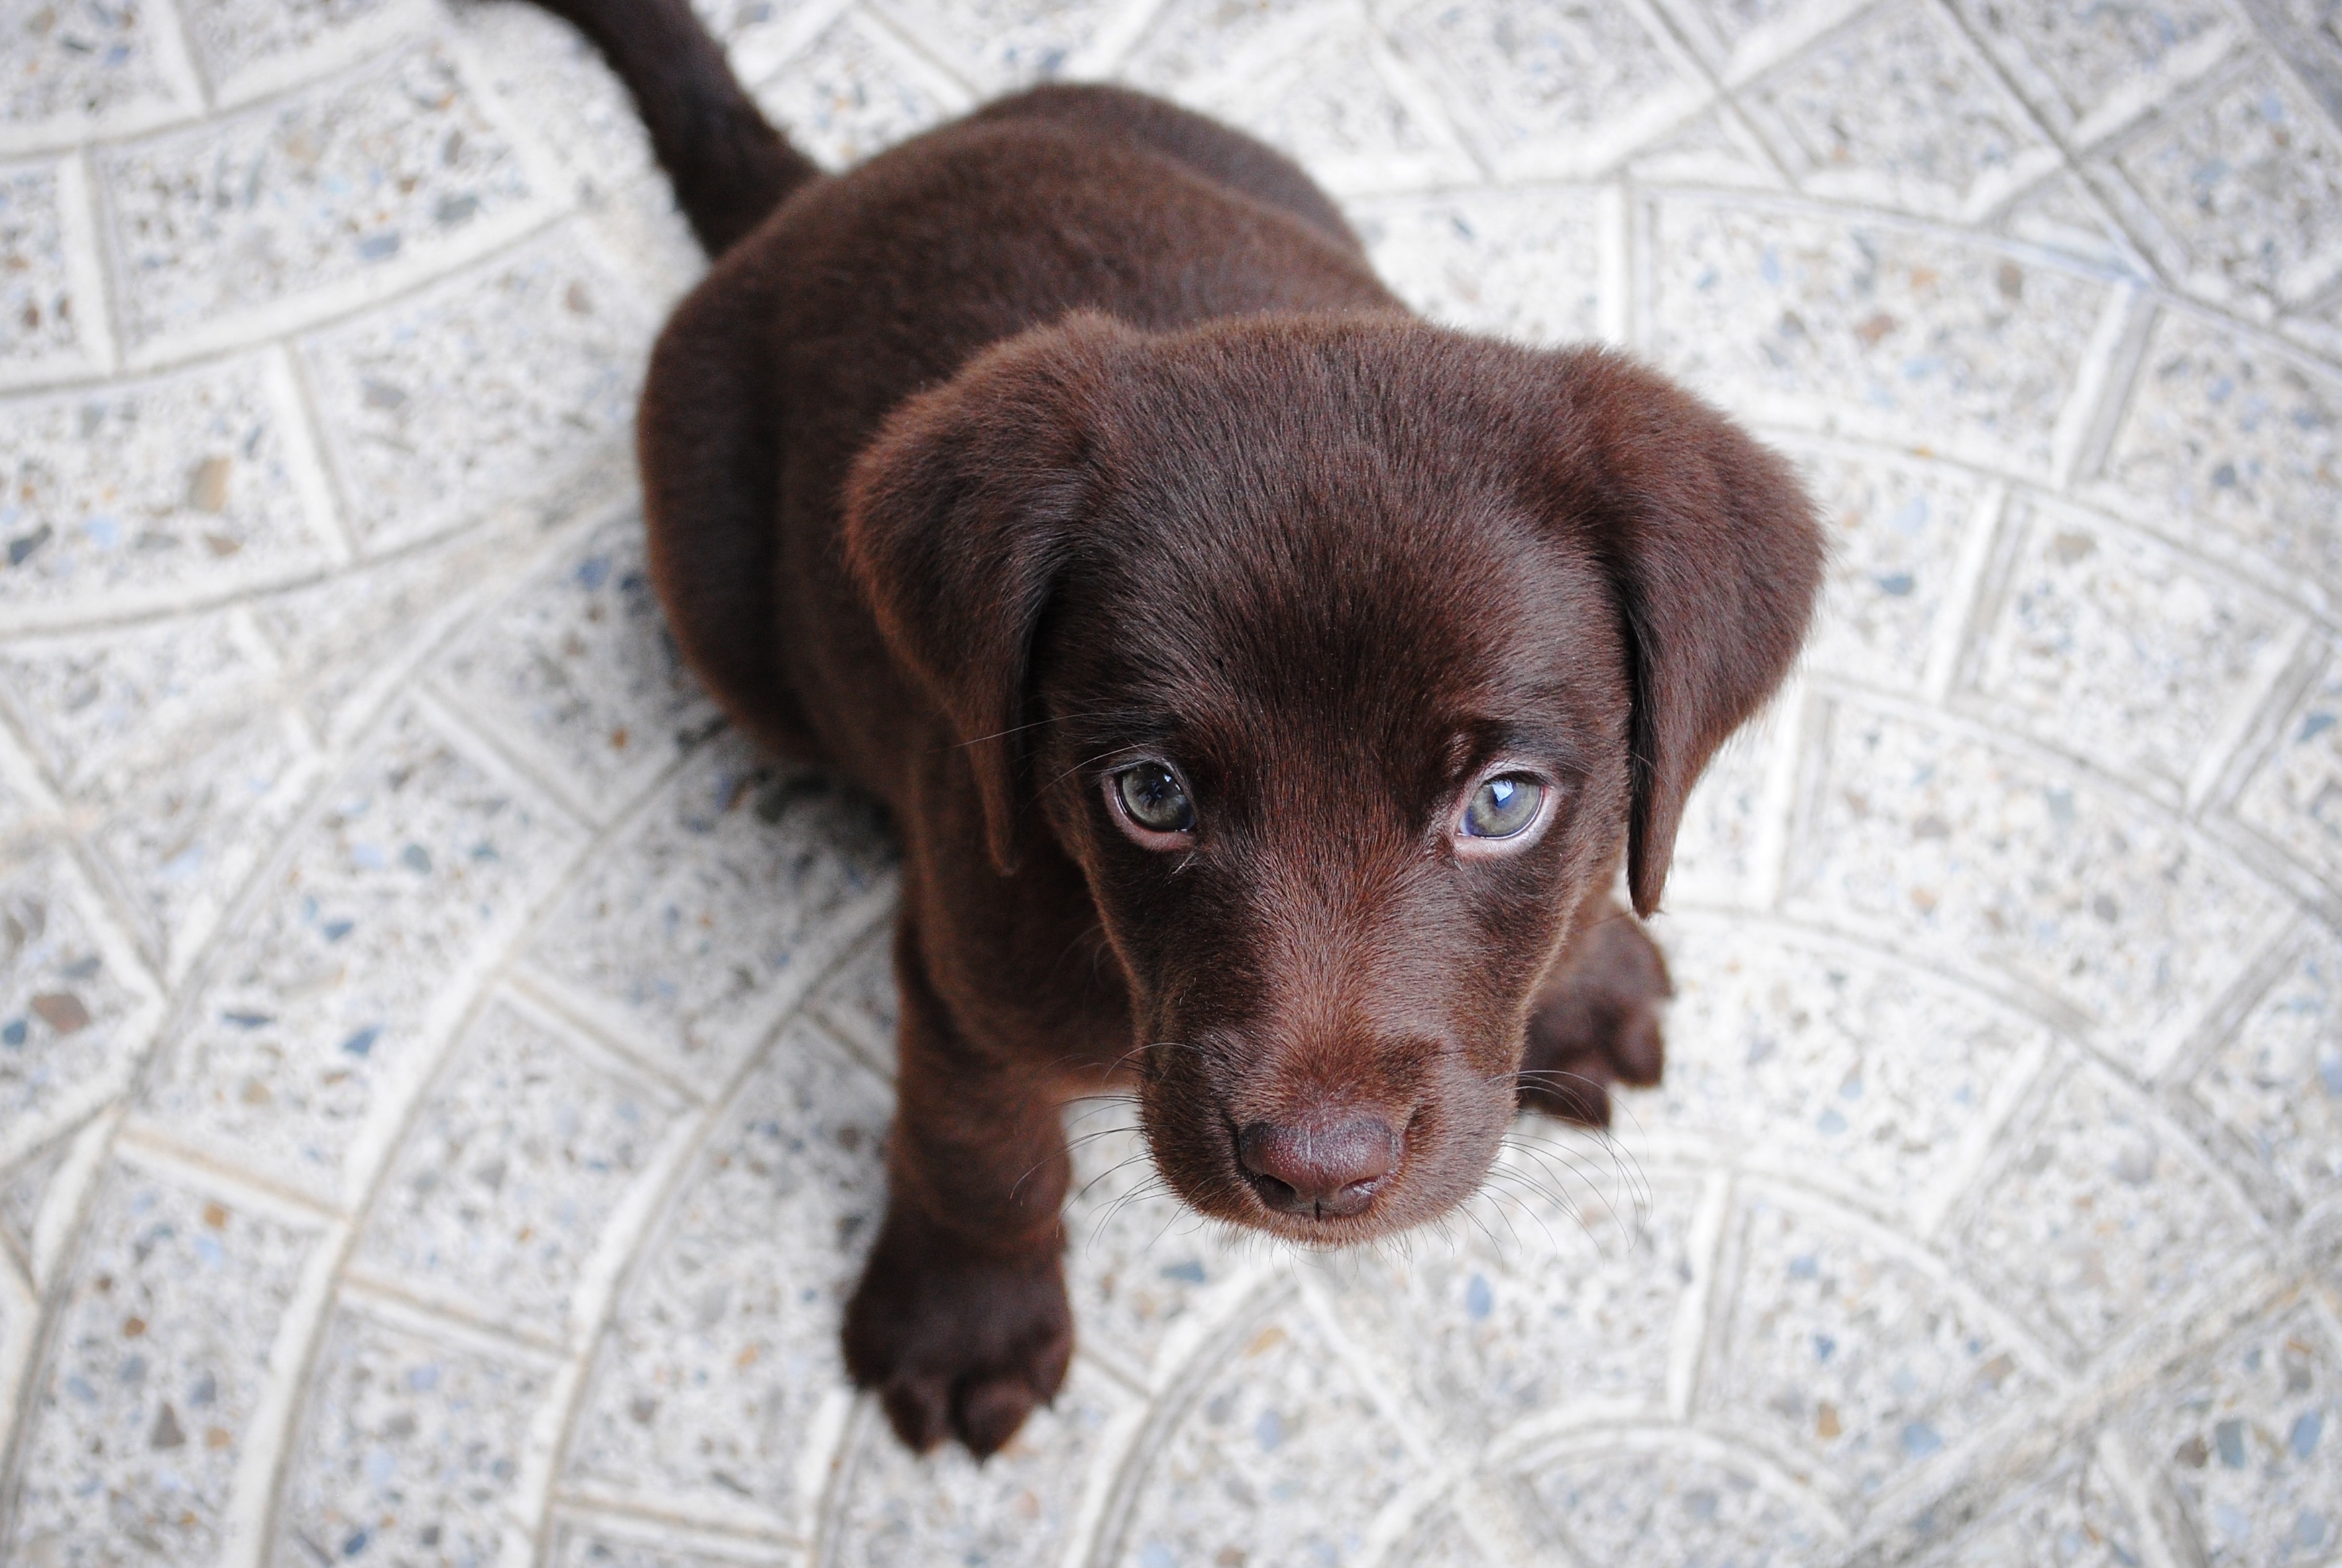 chocolate labrador retriever puppy